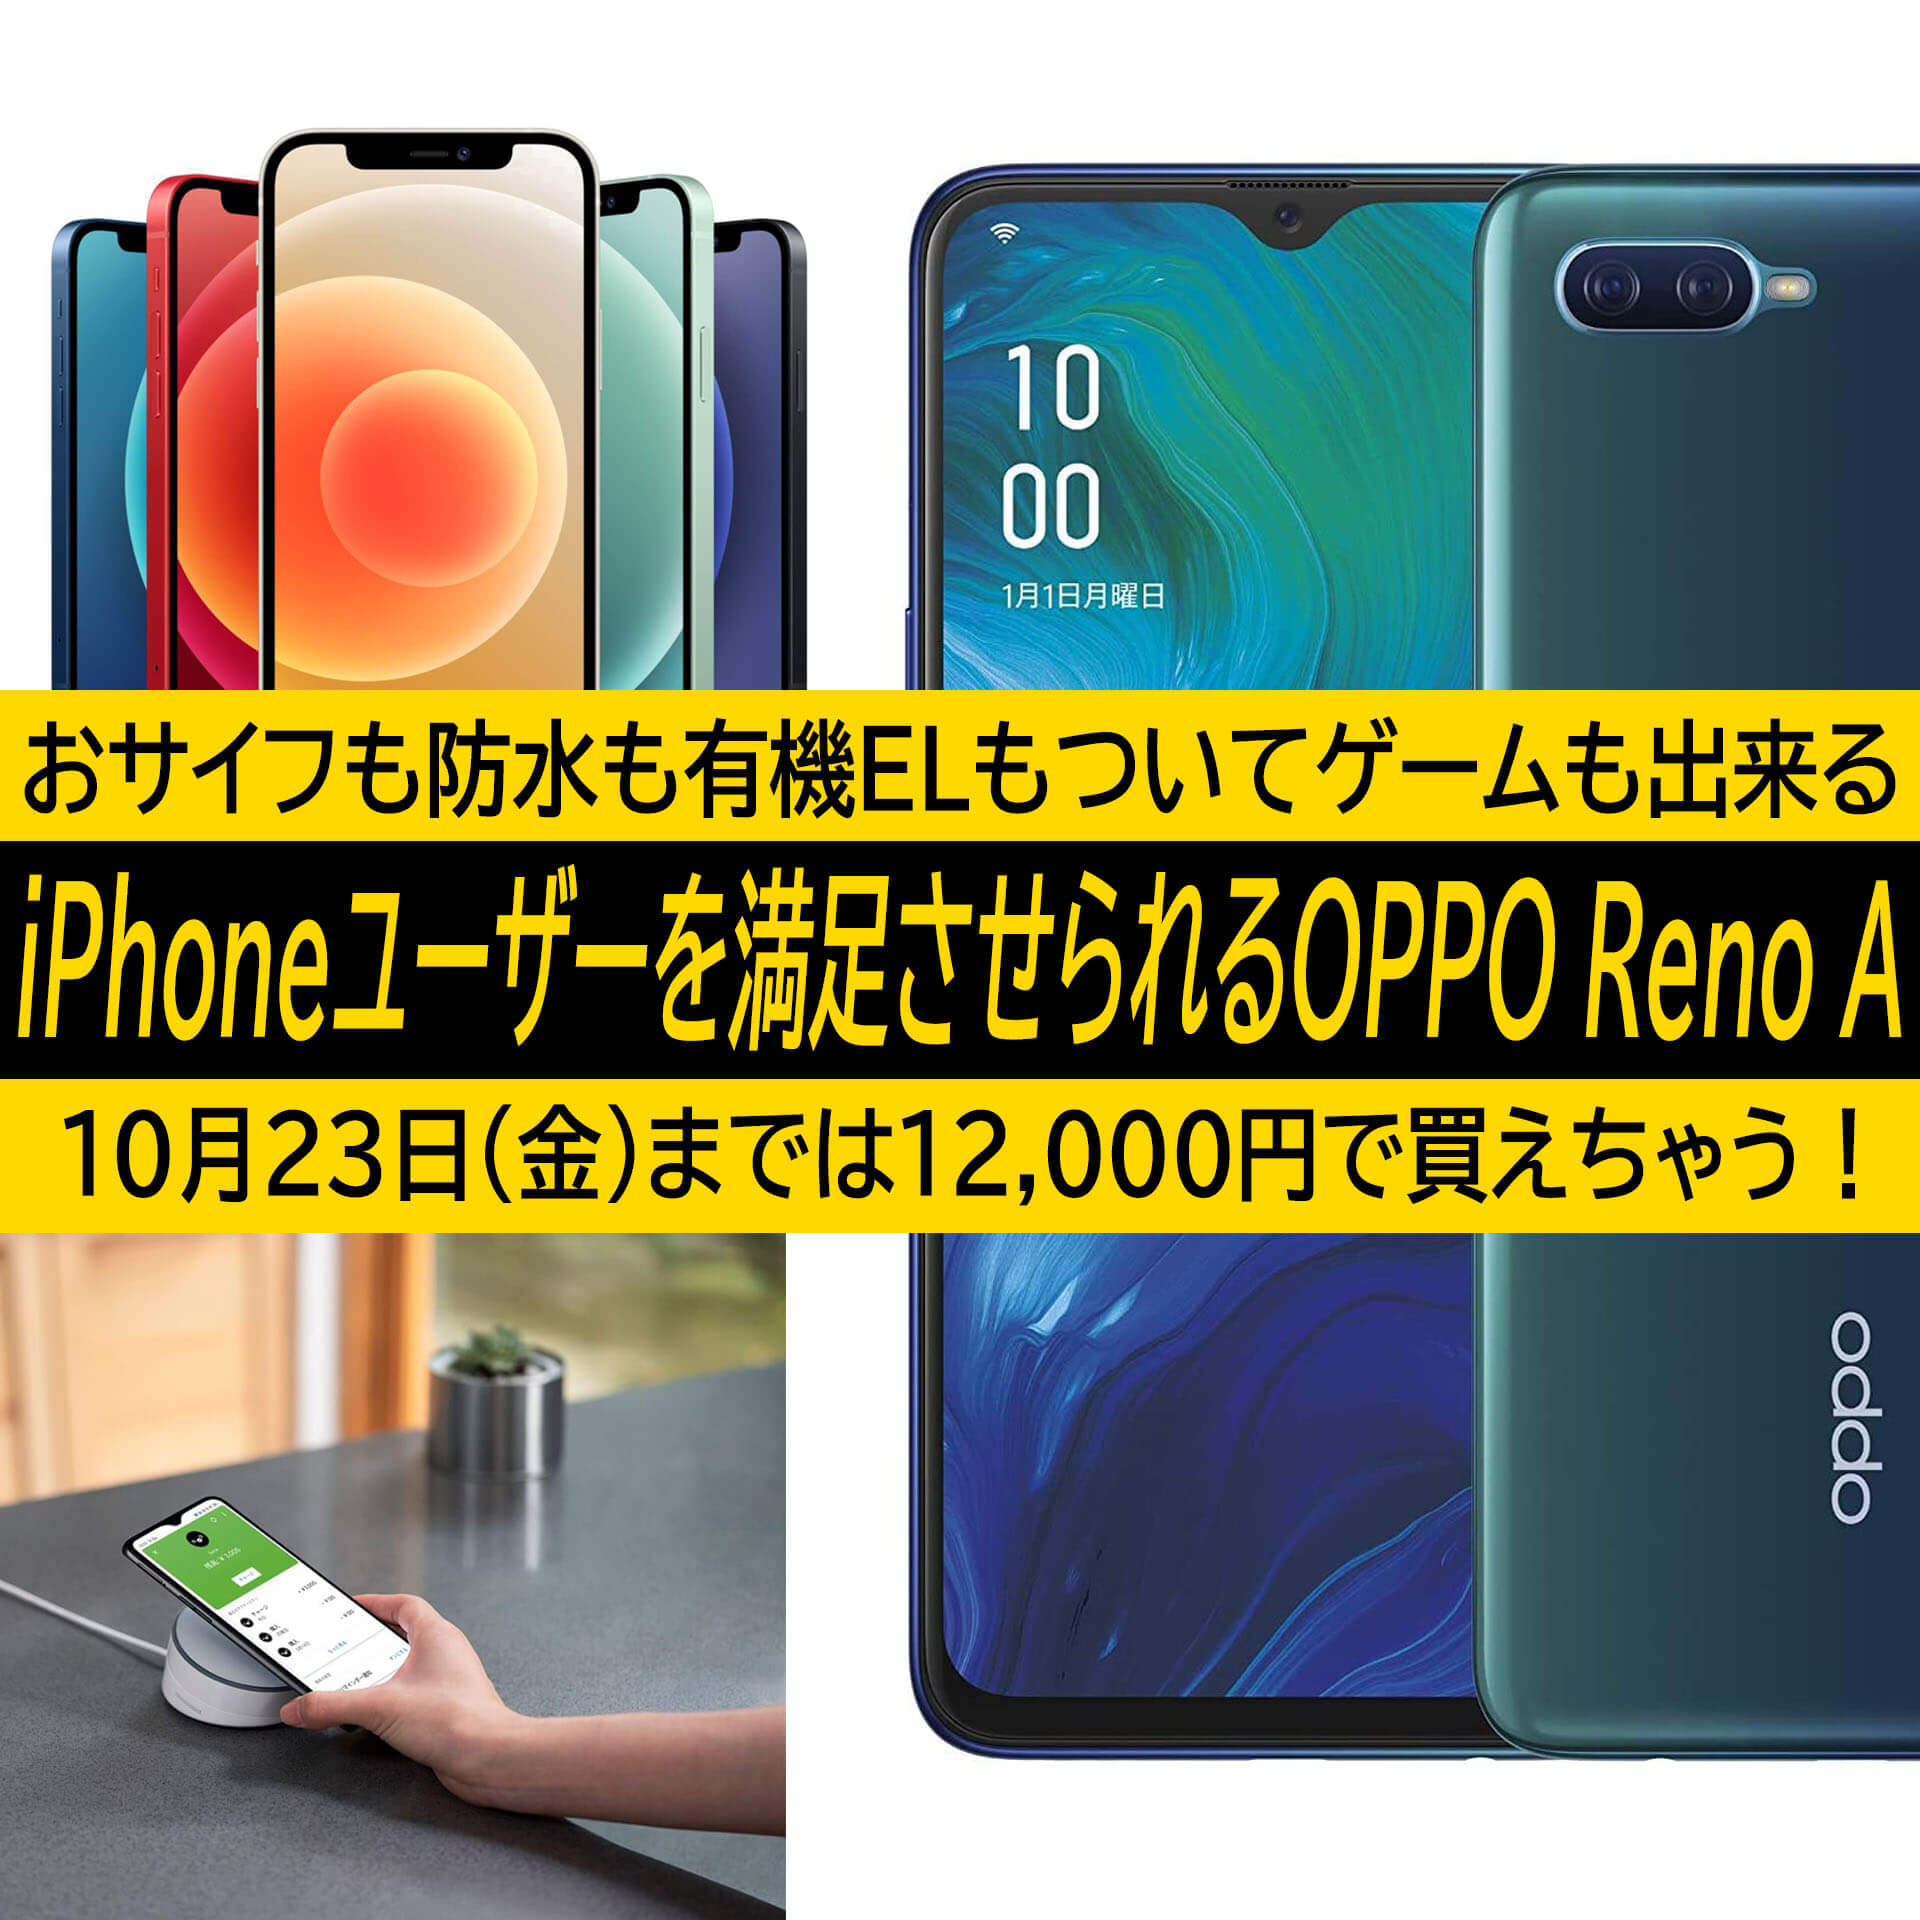 Iphone 12は9万超え ゲームも快適なおサイフケータイ 防水スマホoppo Reno Aは1万円台 光り輝くコスパ